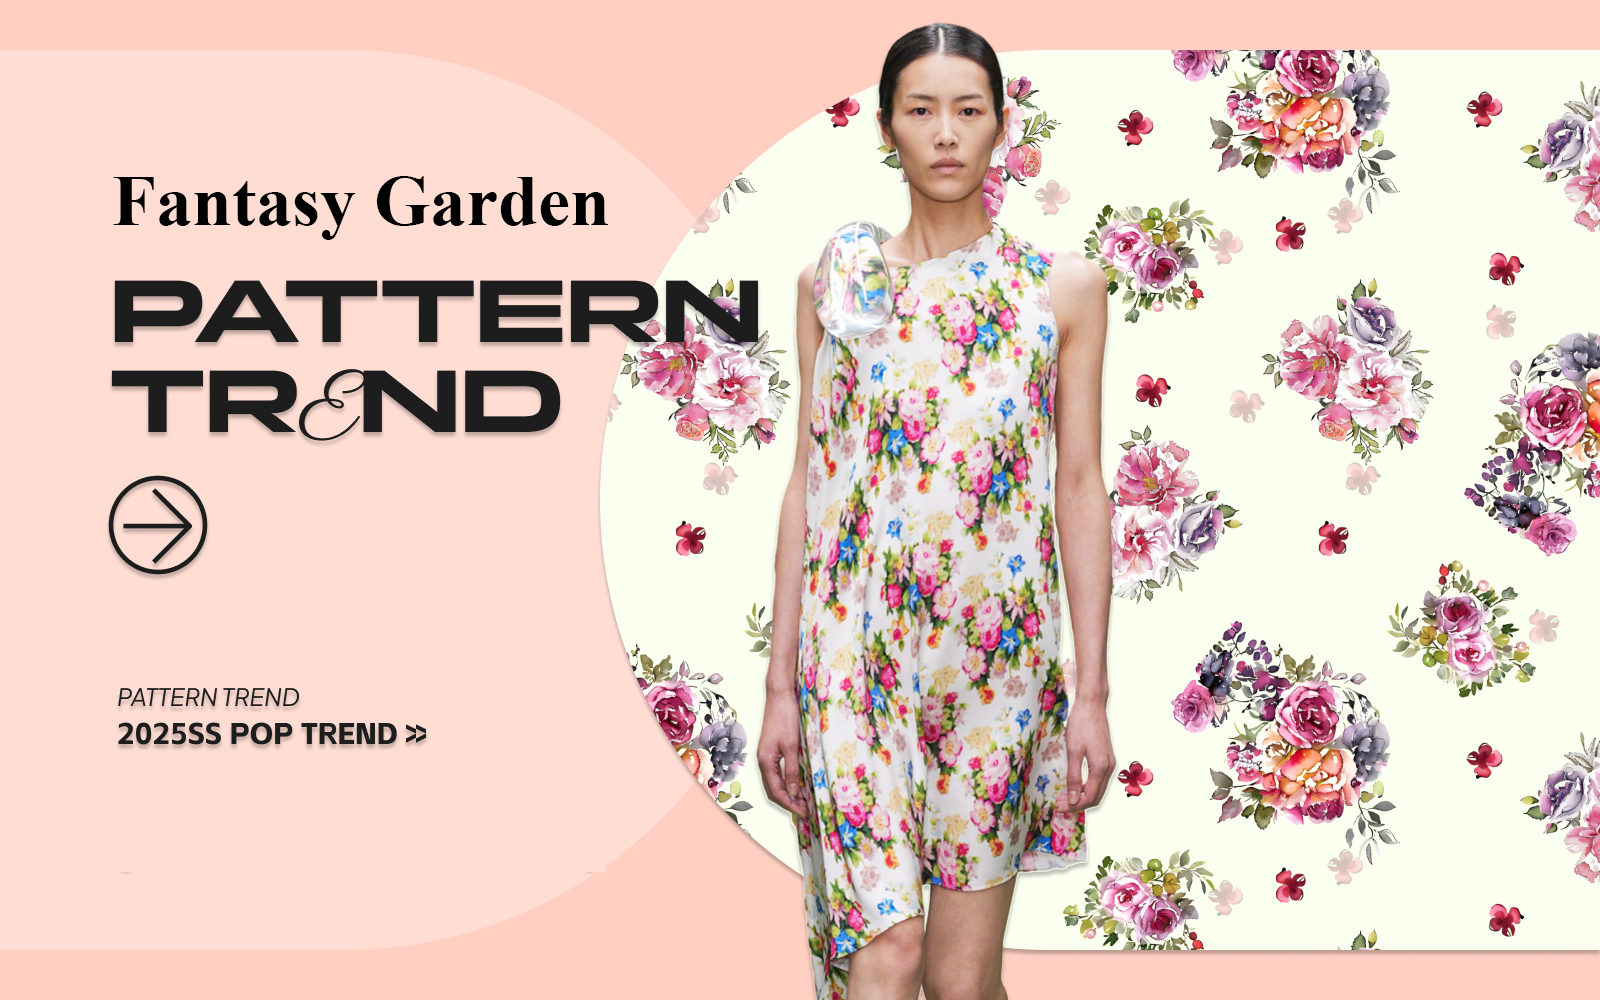 Fantasy Garden -- The Pattern Trend for Womenswear